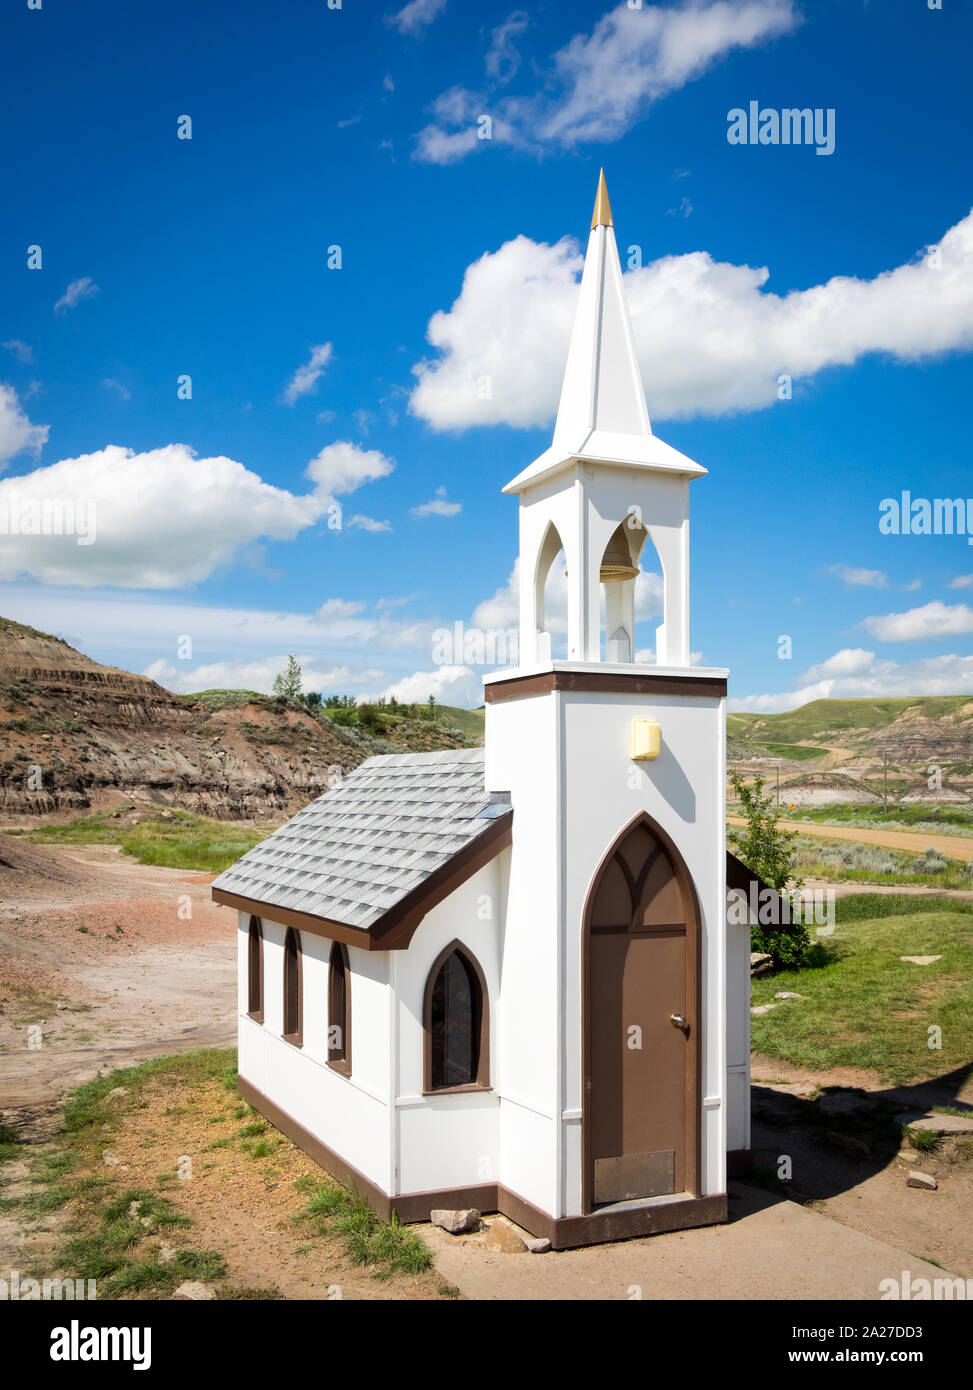 La famosa chiesetta in Drumheller, Alberta, Canada. La capacità della chiesa è di 6 persone ed è popolare con i turisti. Foto Stock